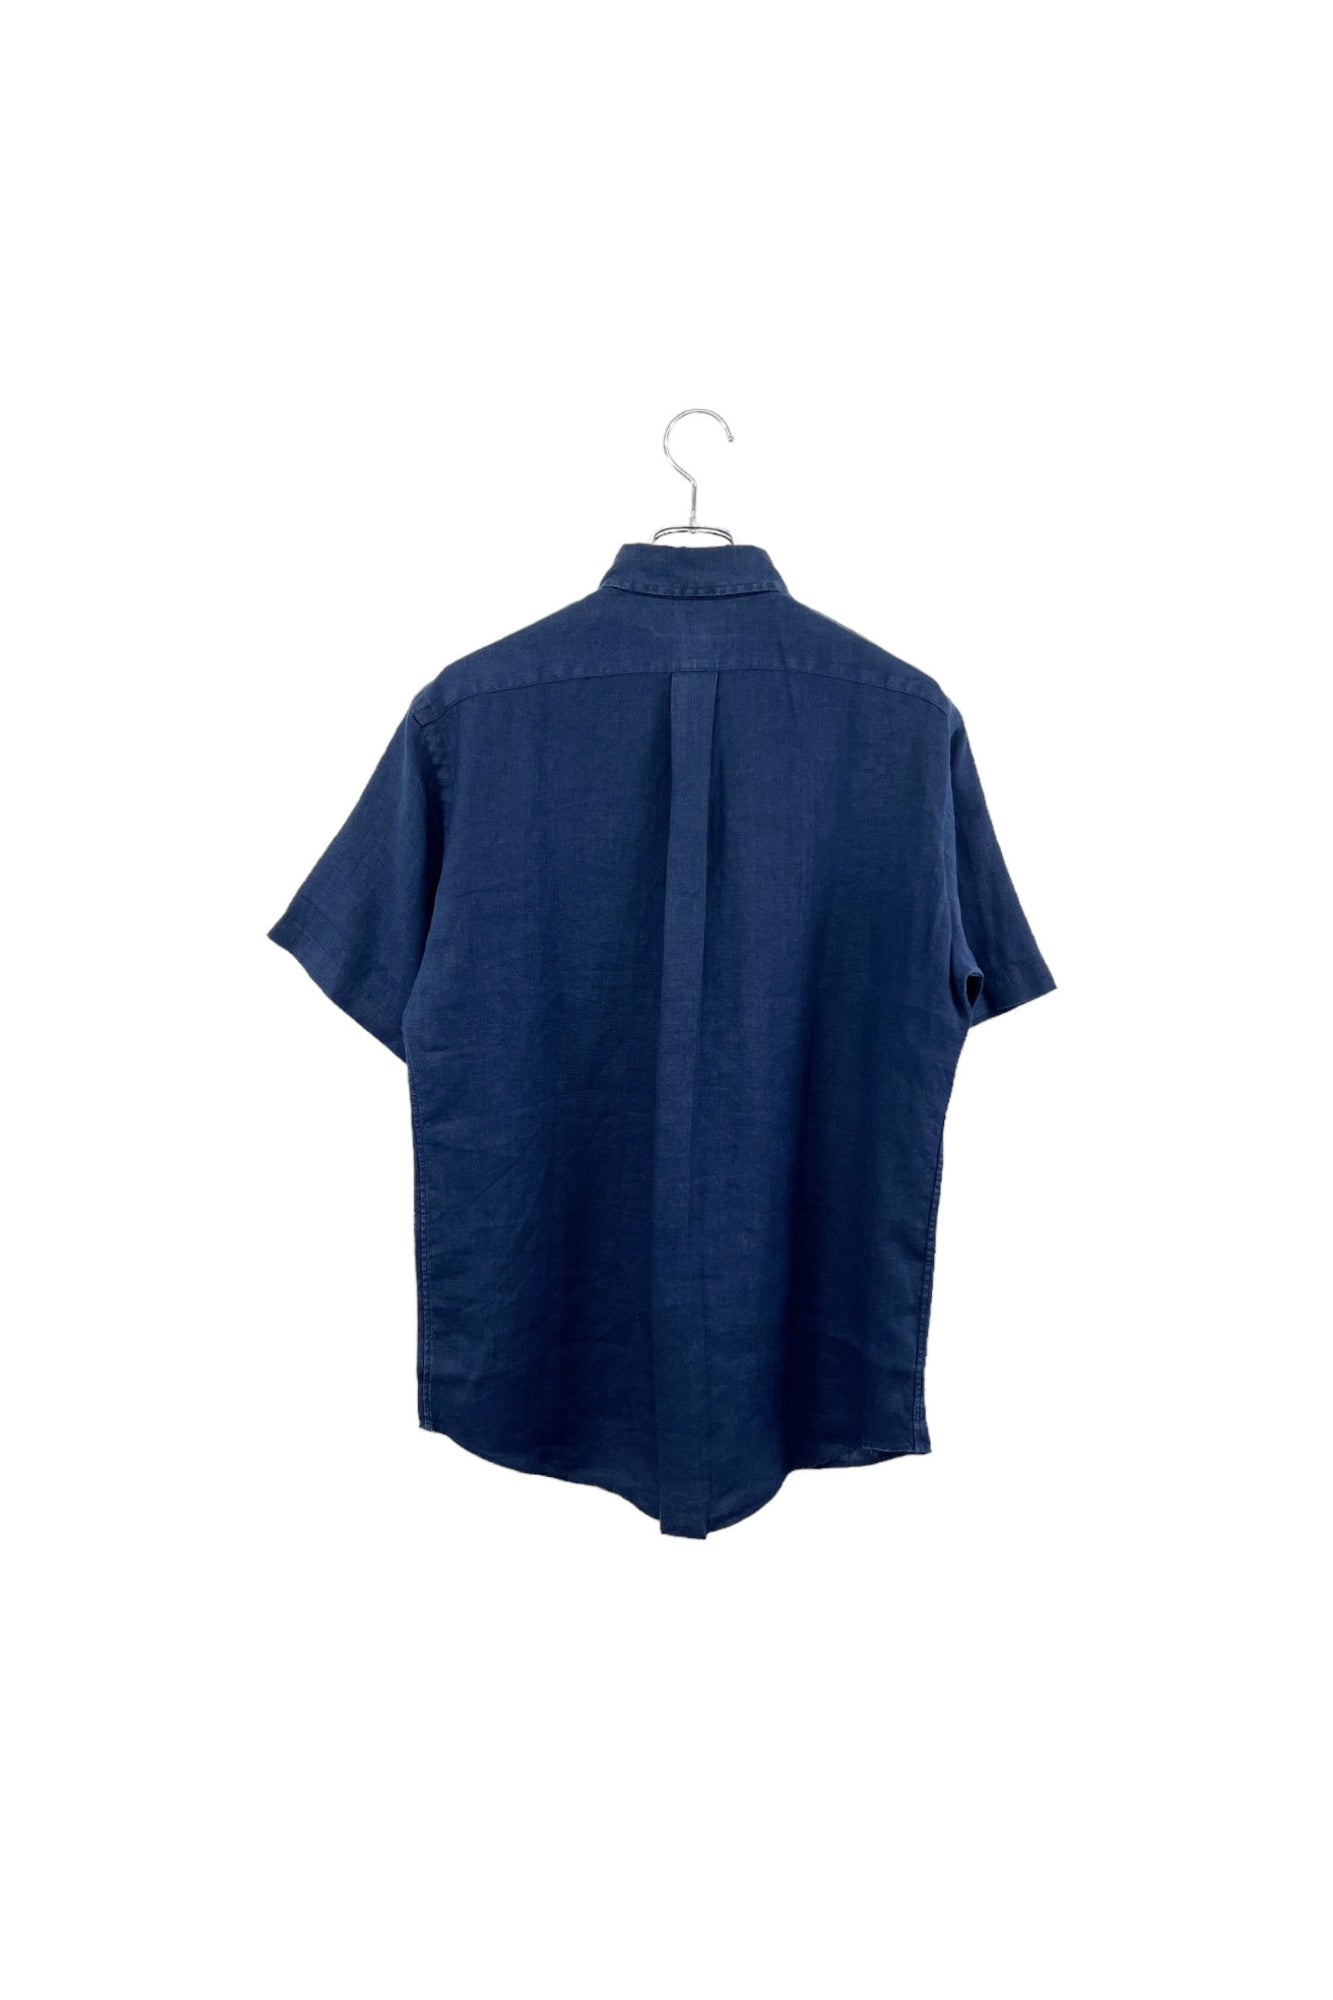 90s Ralph Lauren linen shirt